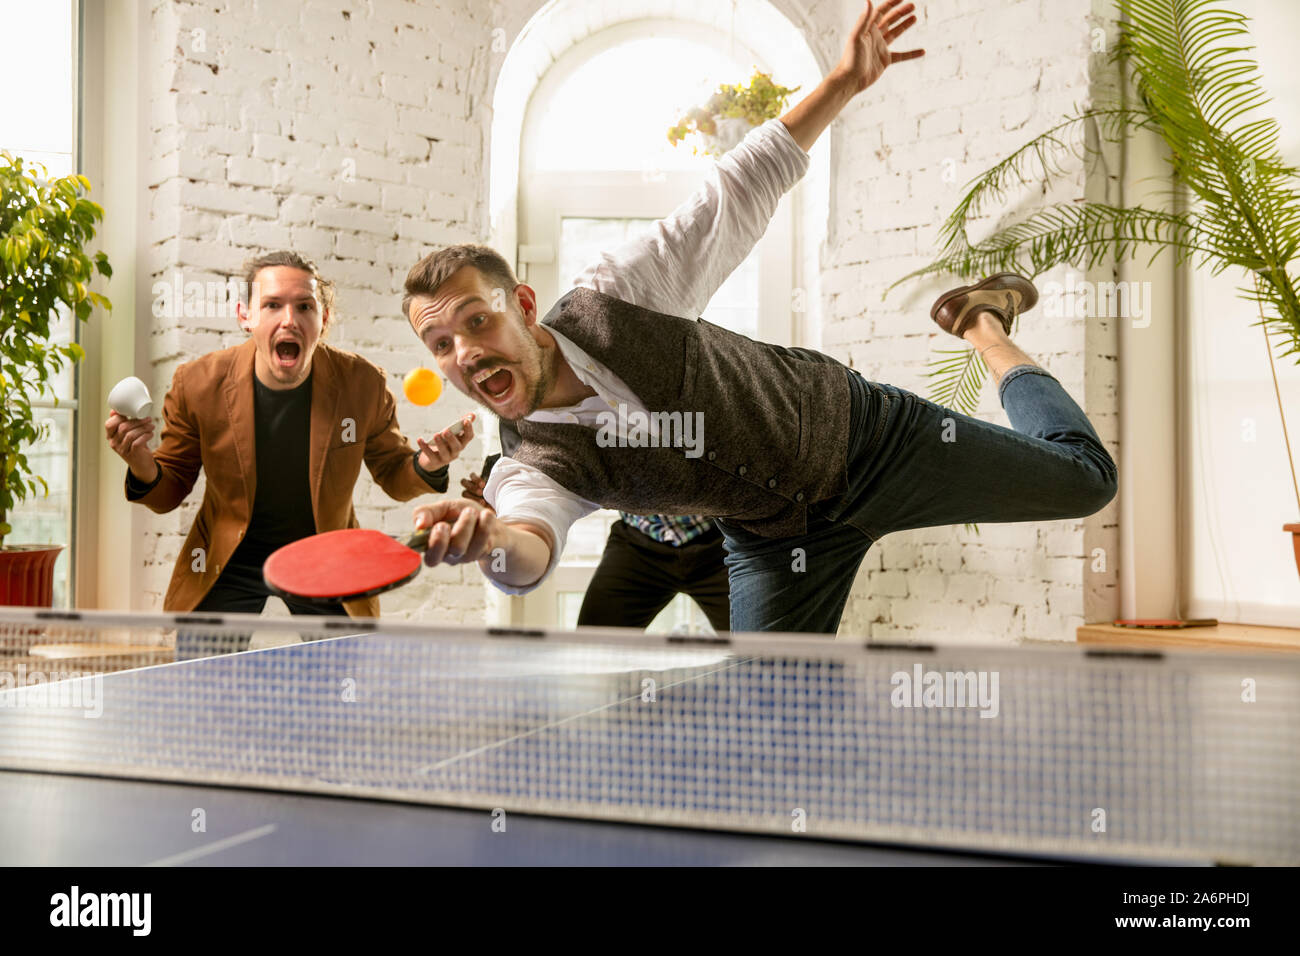 Junge Menschen spielen Tischtennis am Arbeitsplatz, Spaß zu haben. Freunde in legere Kleidung spielen Ping pong zusammen an einem sonnigen Tag. Konzept der Freizeitgestaltung, Sport, Freundschaft, Teambuilding, Teamarbeit. Stockfoto